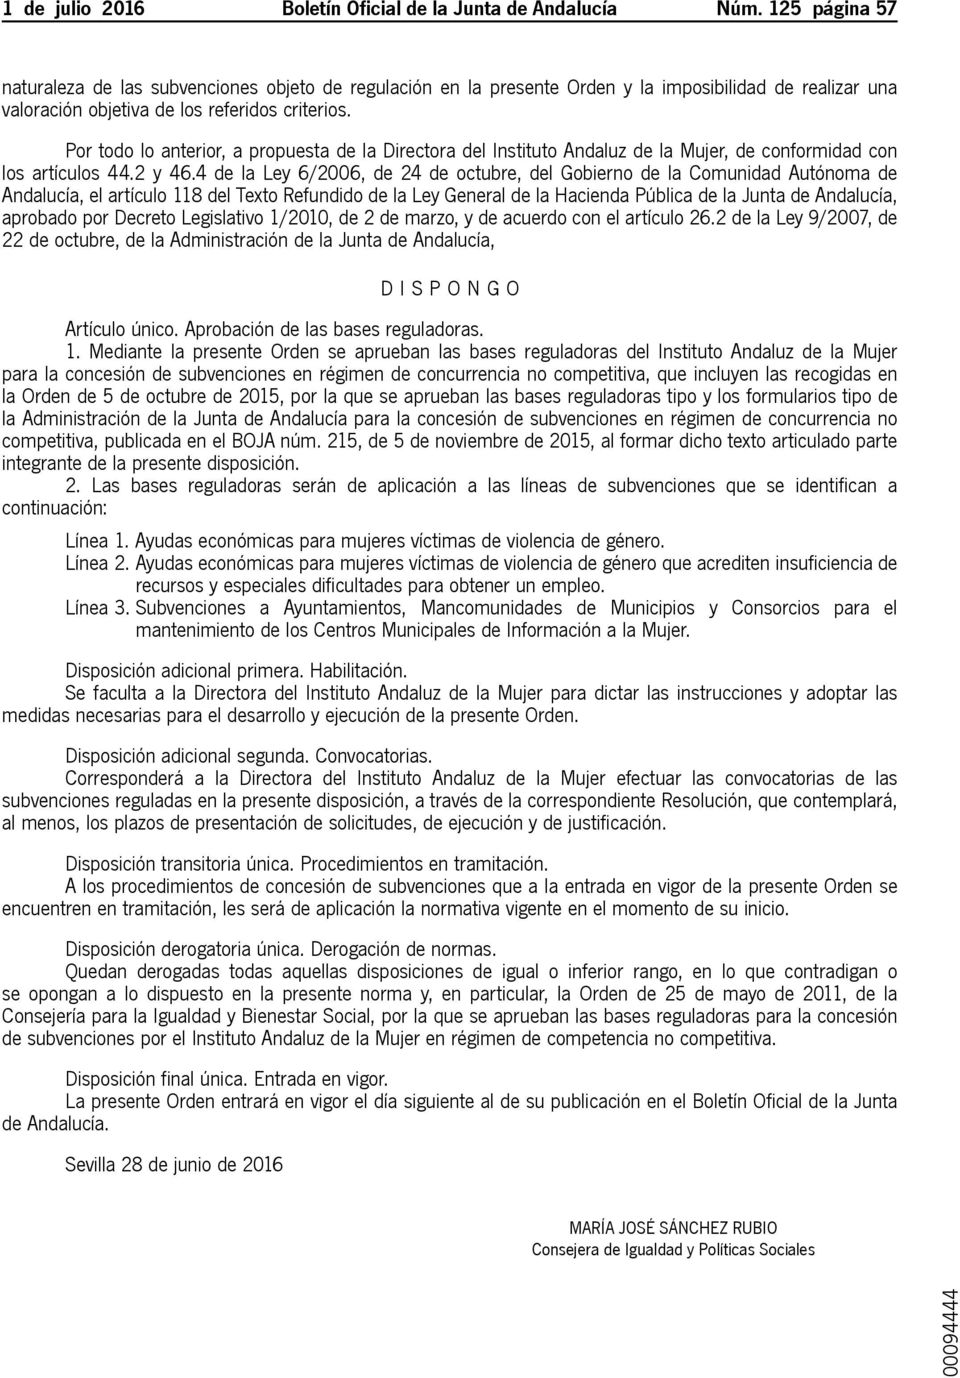 Por todo lo anterior, a propuesta de la Directora del Instituto Andaluz de la Mujer, de conformidad con los artículos 44.2 y 46.